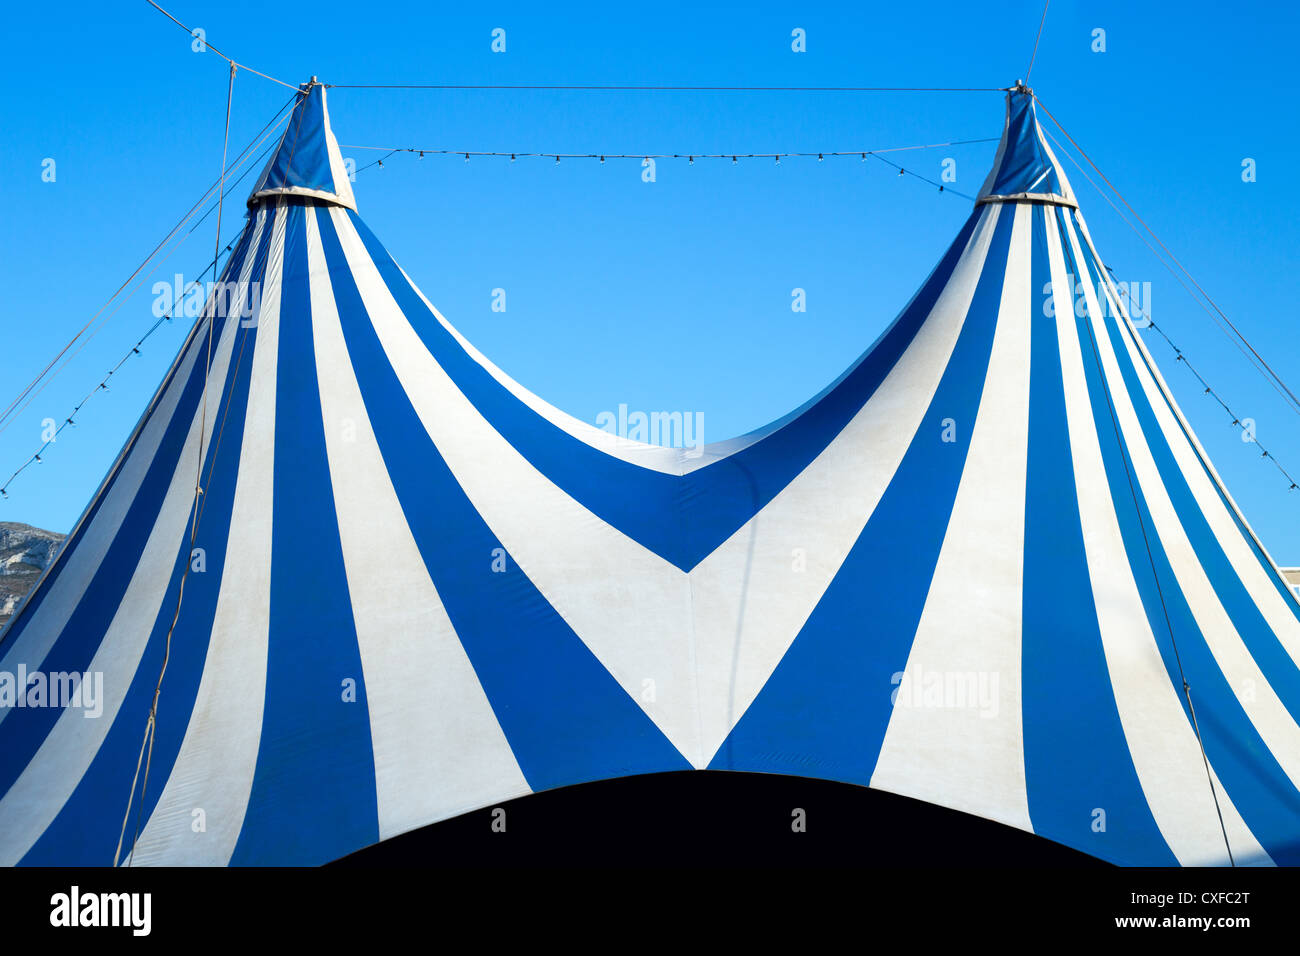 Tente de cirque dépouillé le bleu et blanc sur un ciel clair Banque D'Images